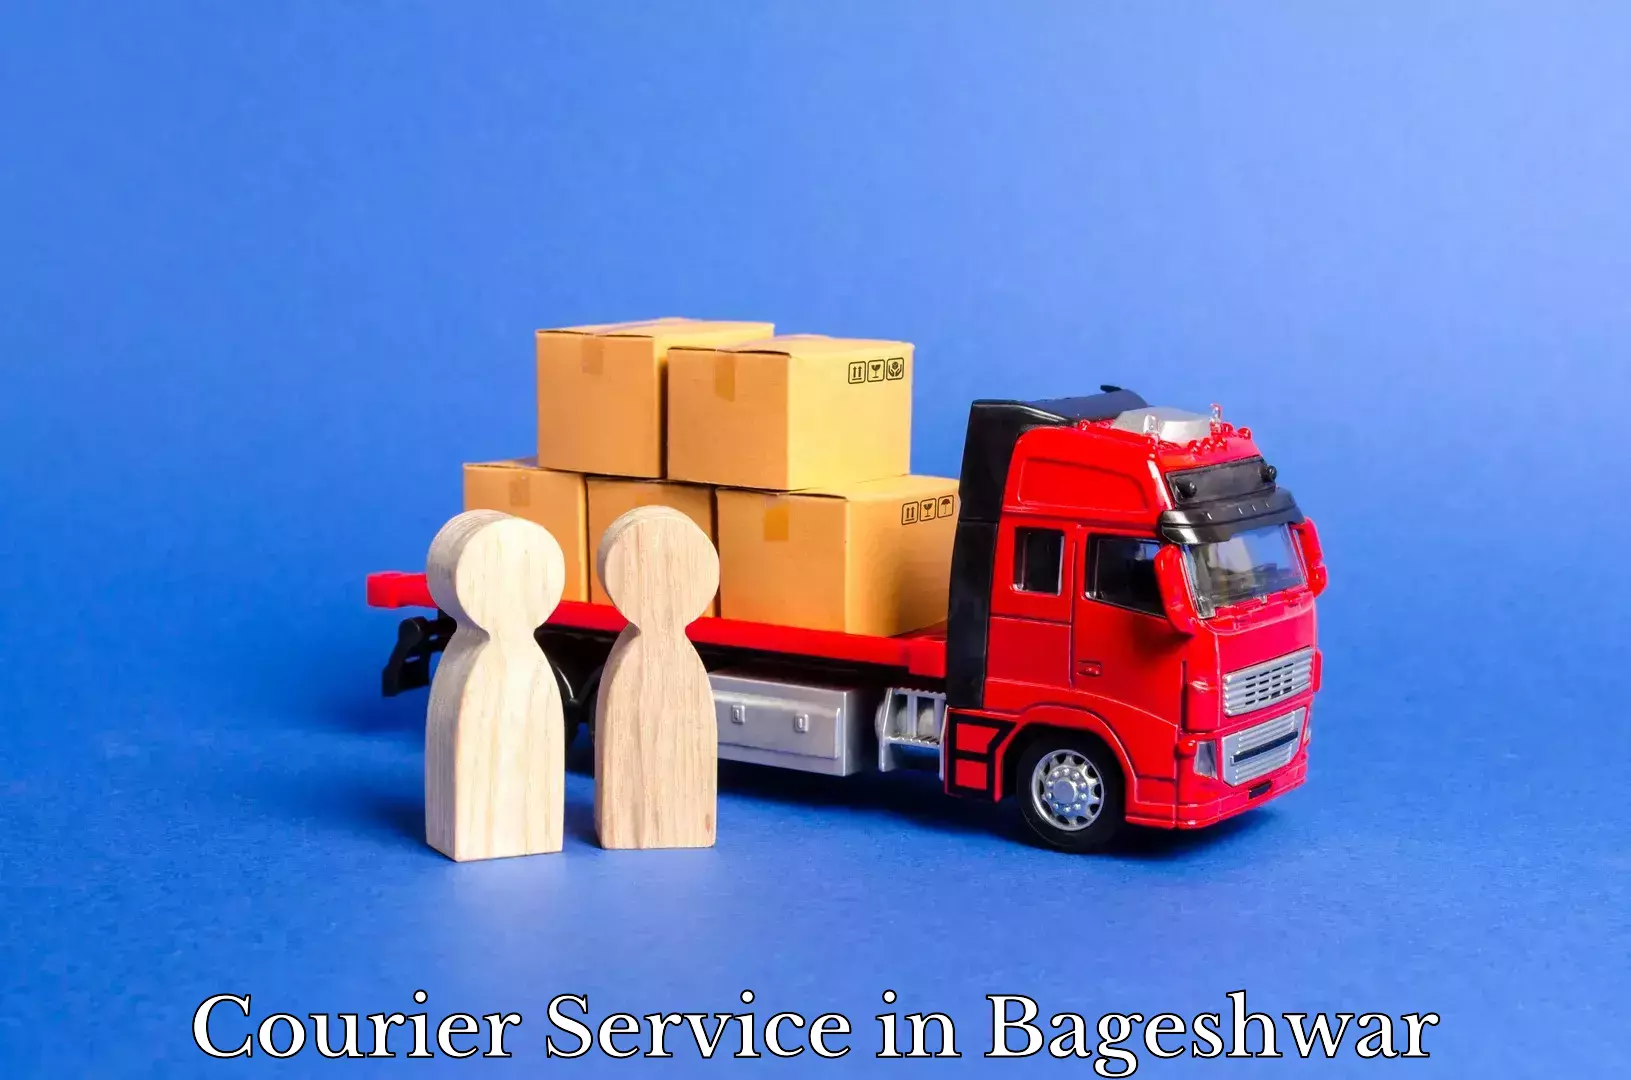 Efficient shipping platforms in Bageshwar